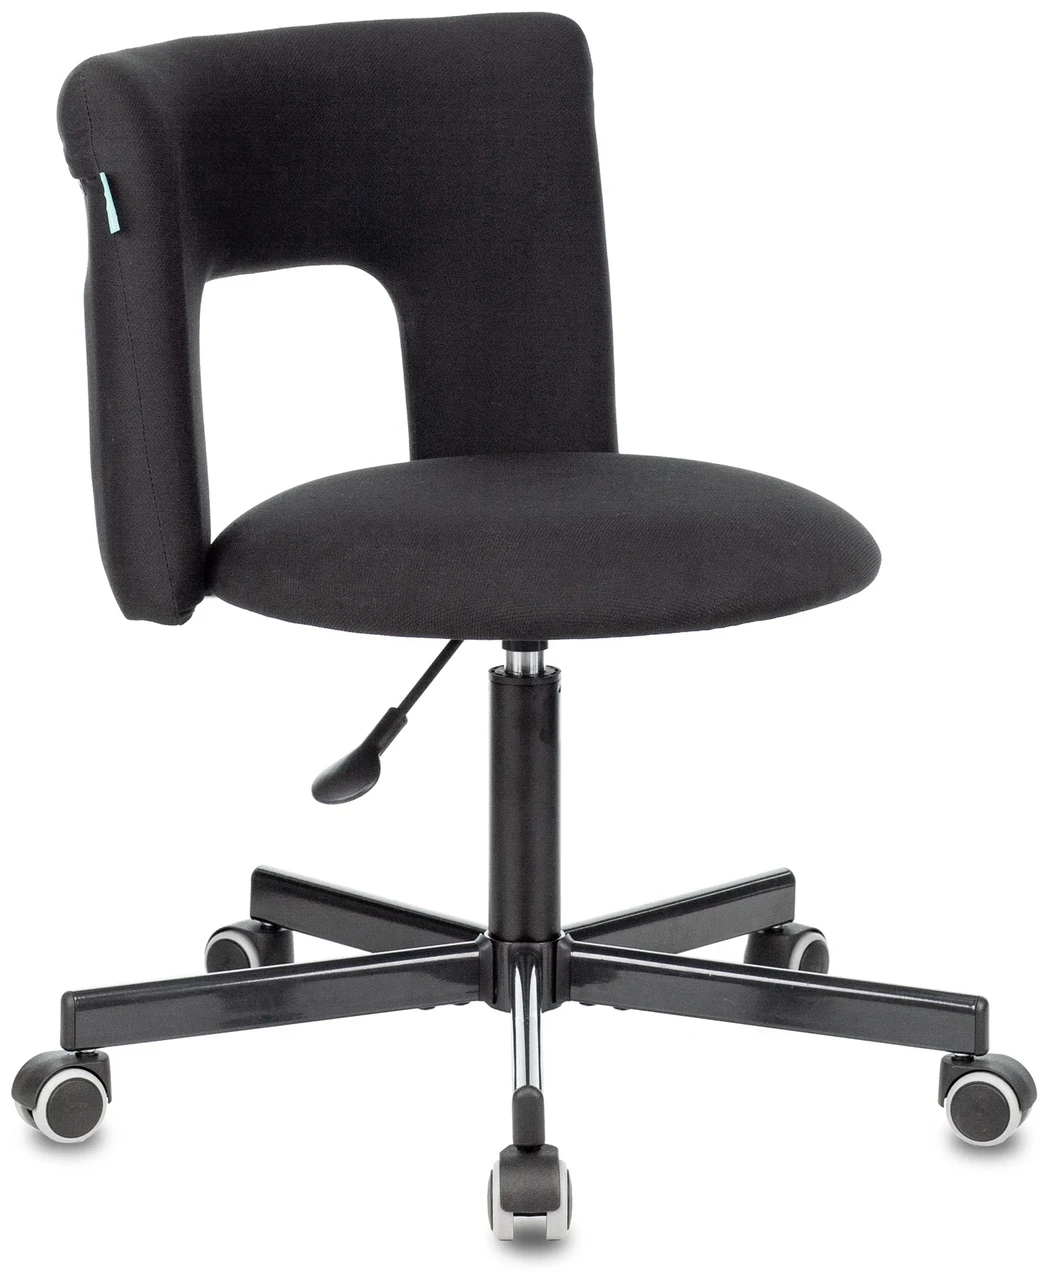 Компьютерное кресло Бюрократ KF-1M для оператора, обивка: текстиль, цвет: черный